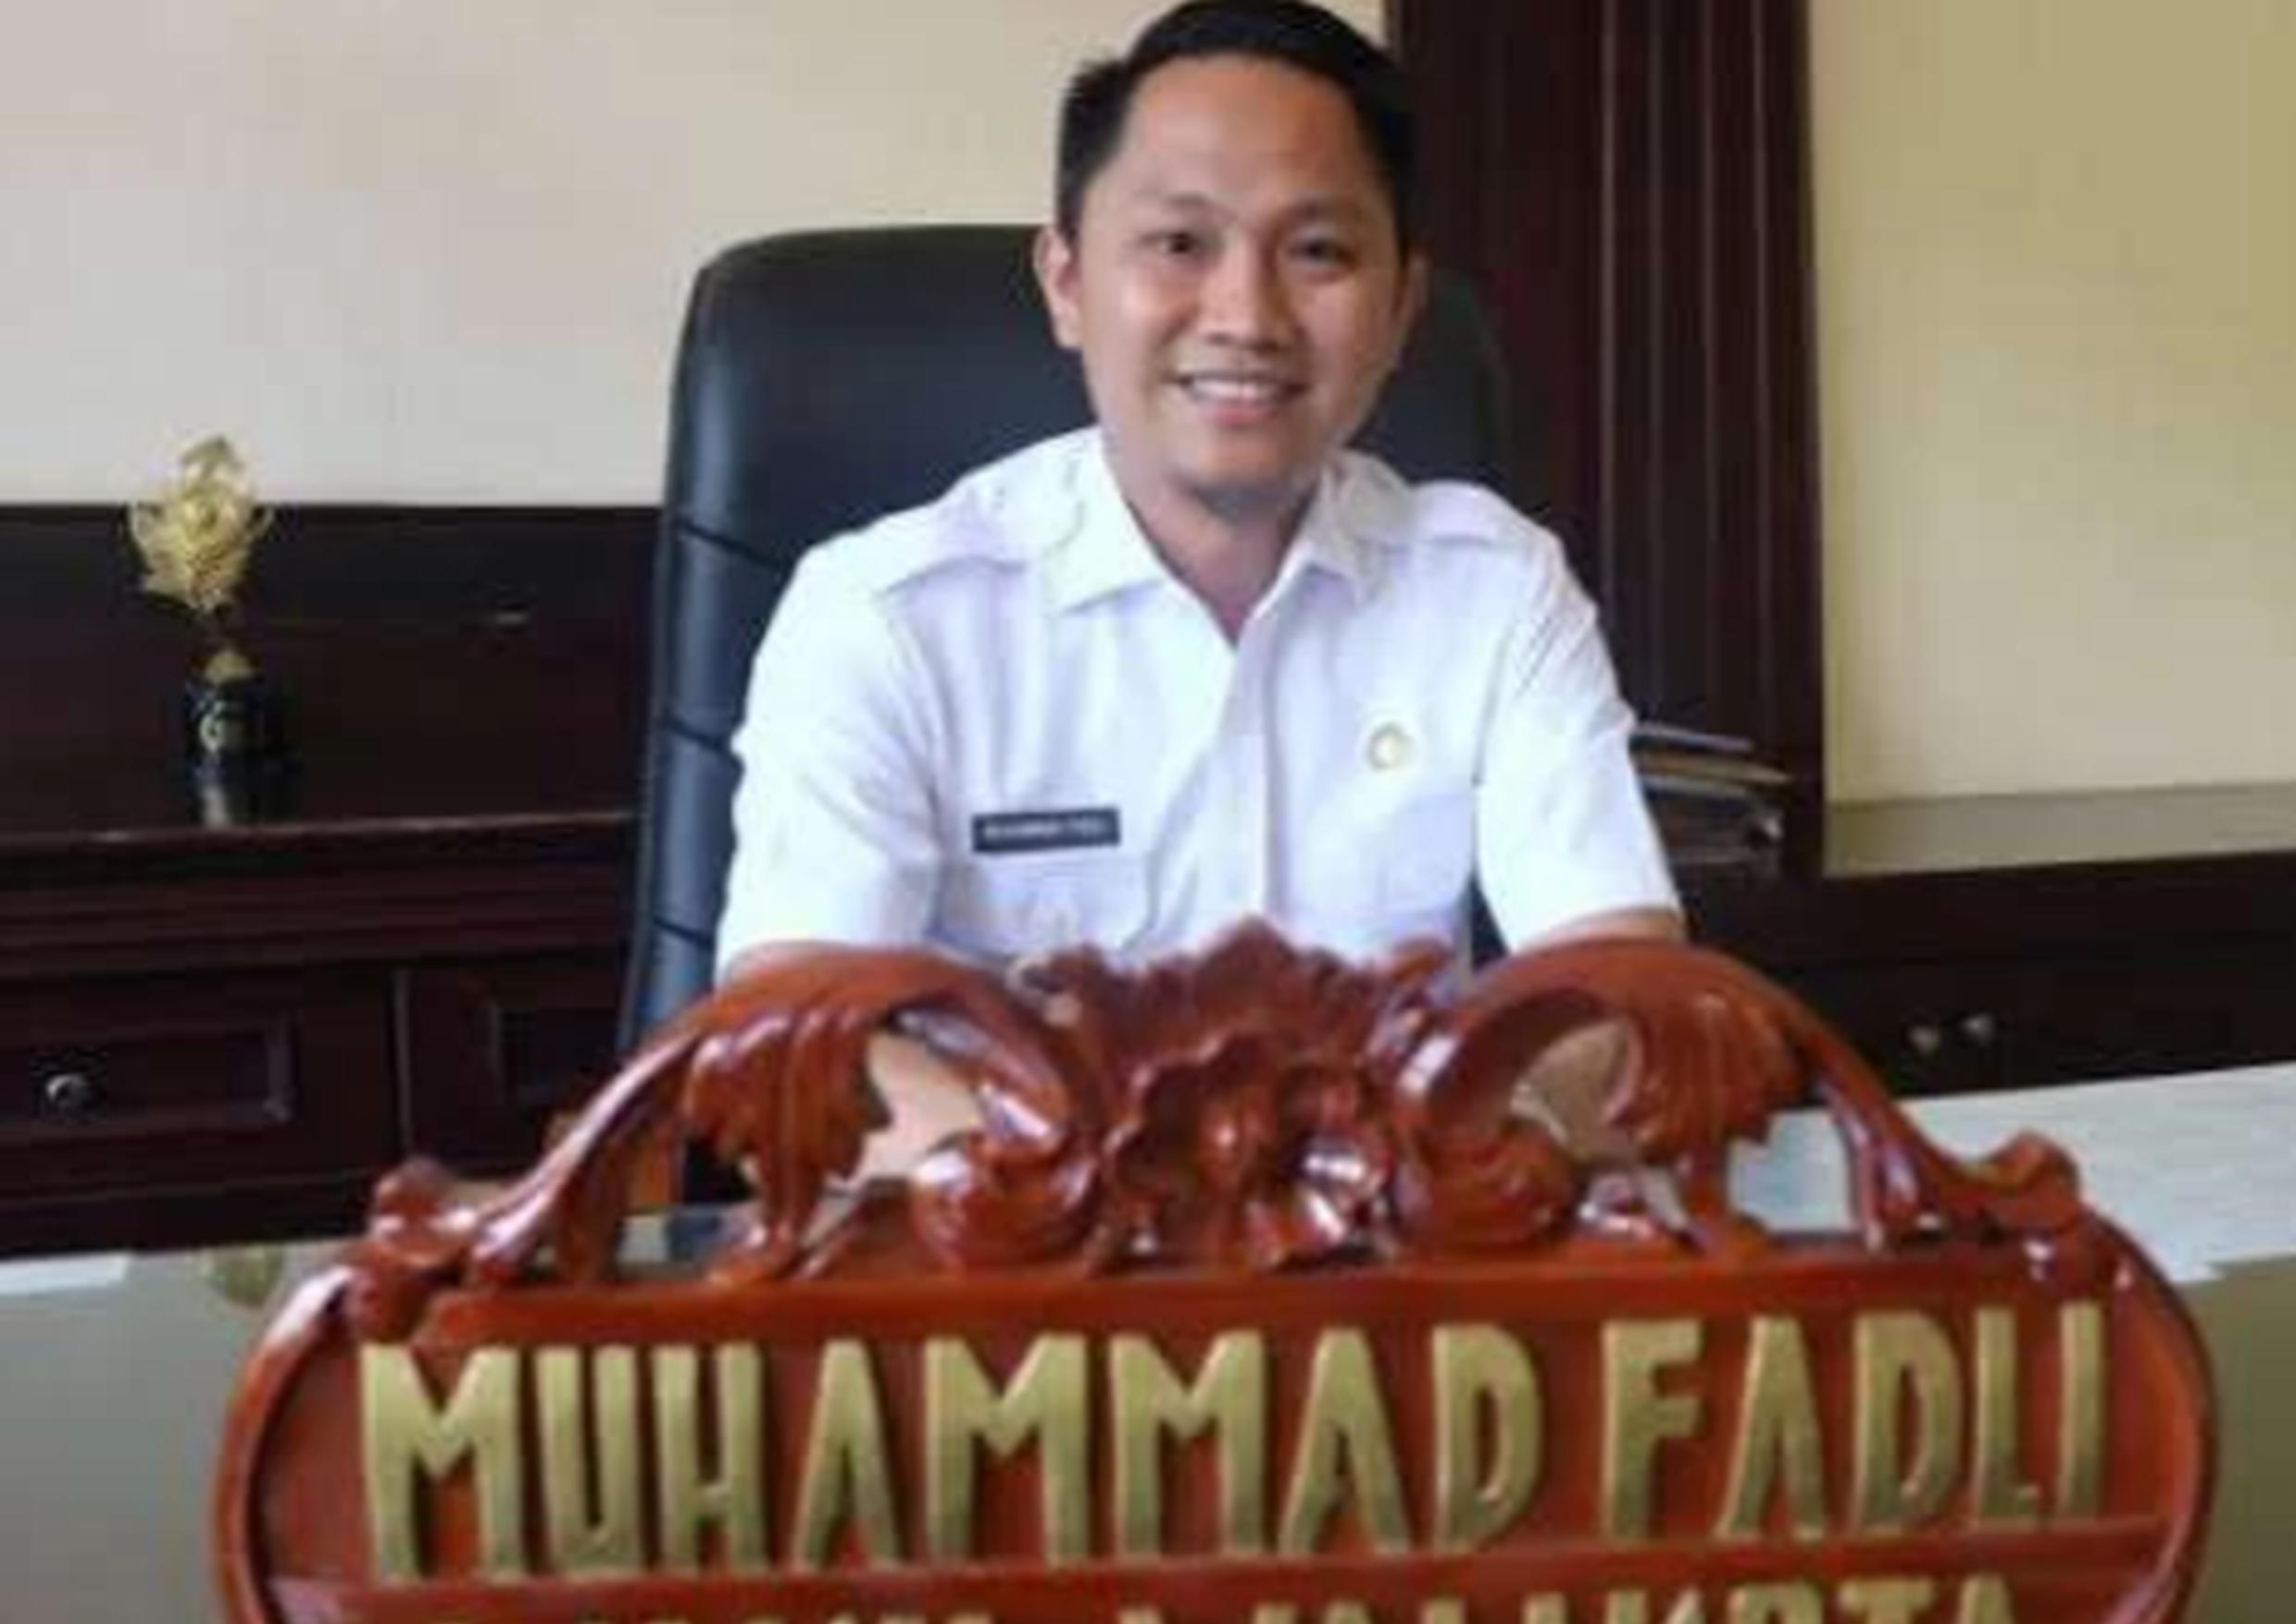 Wakil Walikota Pagaralam Muhammad Fadli Meninggal Dunia, Ini Profil Lengkapnya